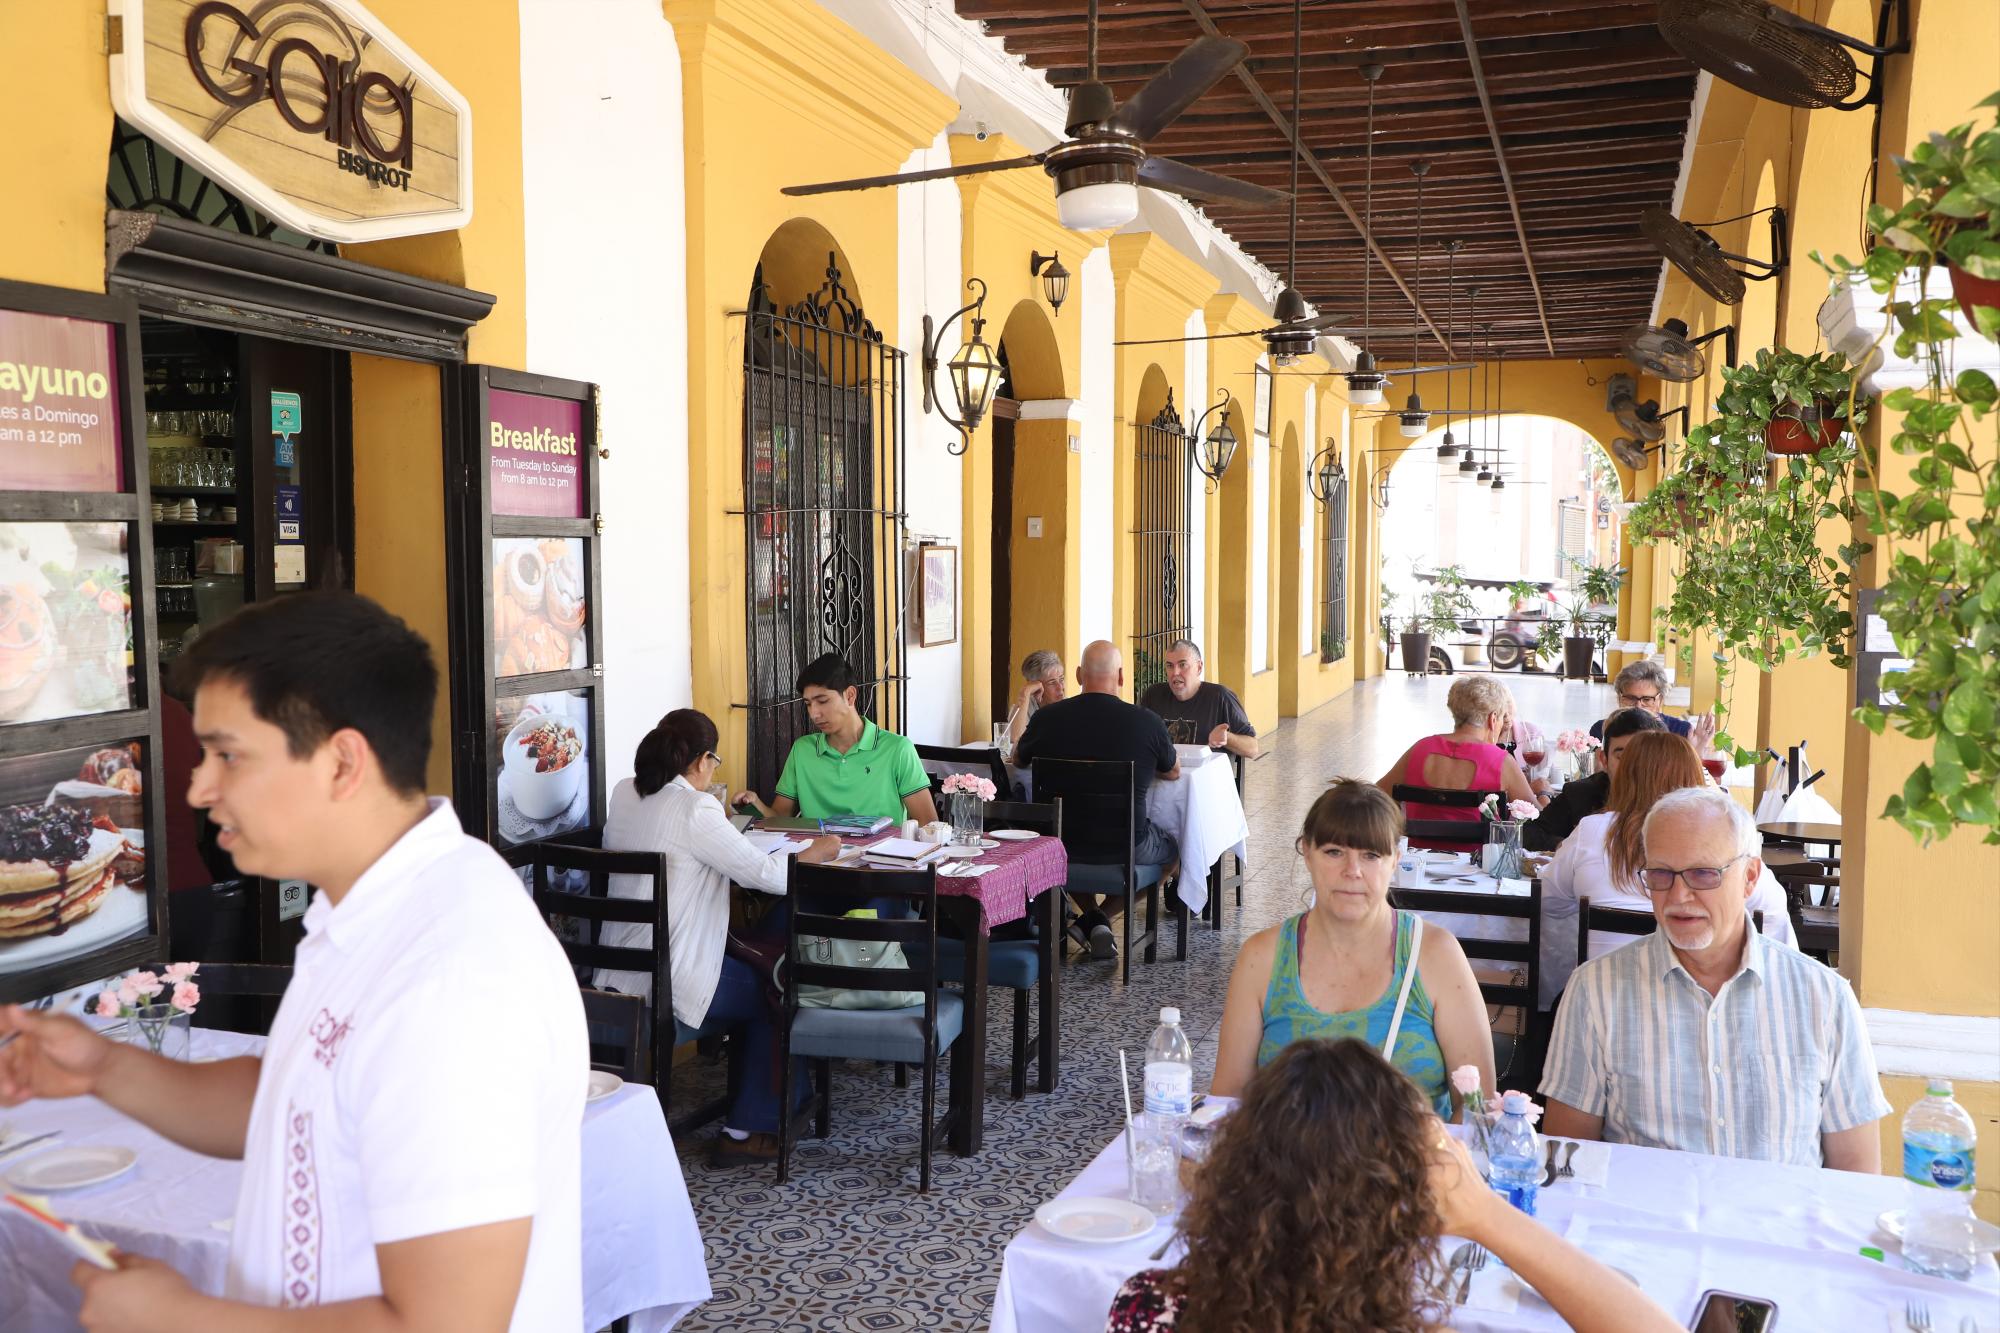 $!Atención de primera calidad y excelente menú ofrece el restaurante ubicado a los alrededores de la Plazuela Machado.